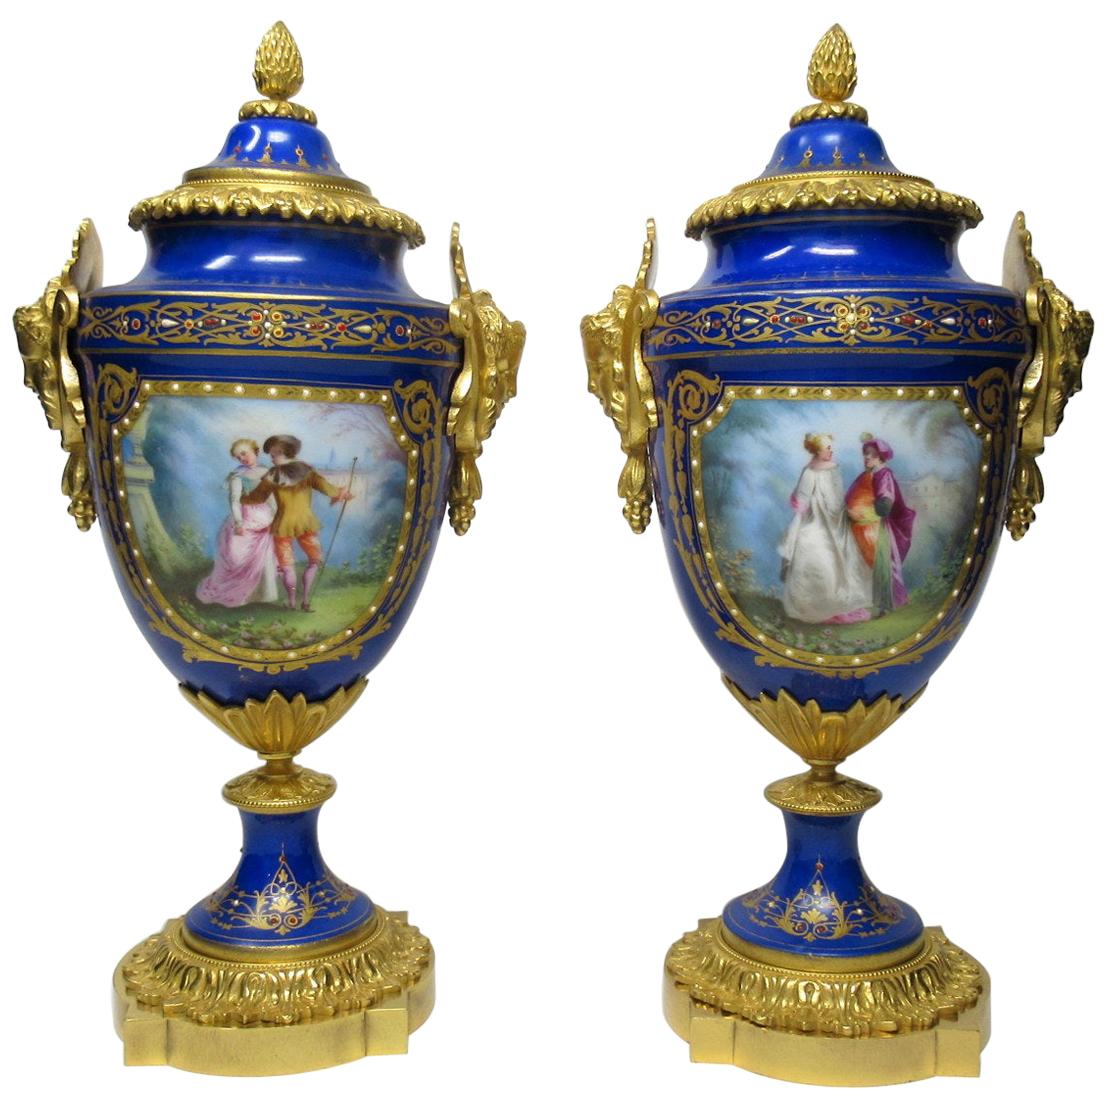 Sèvres Porcelain Watteau Scene Ormolu Cobalt Blue Urns Vases 19th Century, Pair